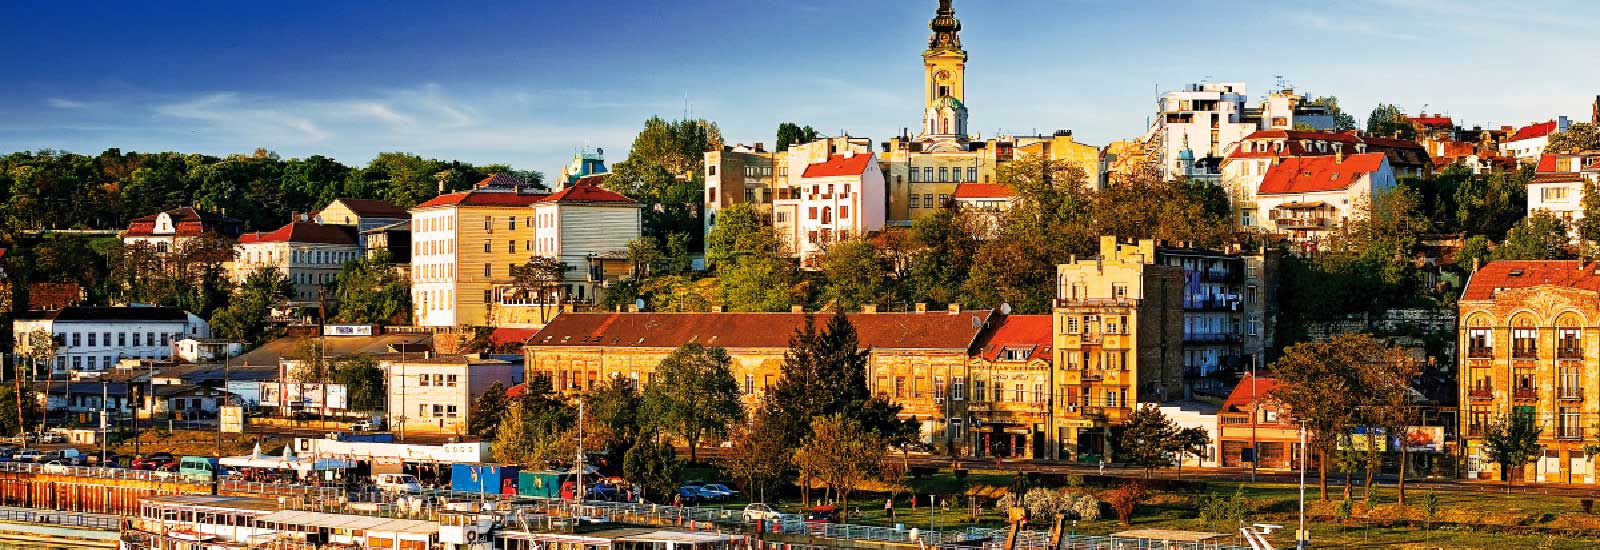 塞尔维亚城市面貌